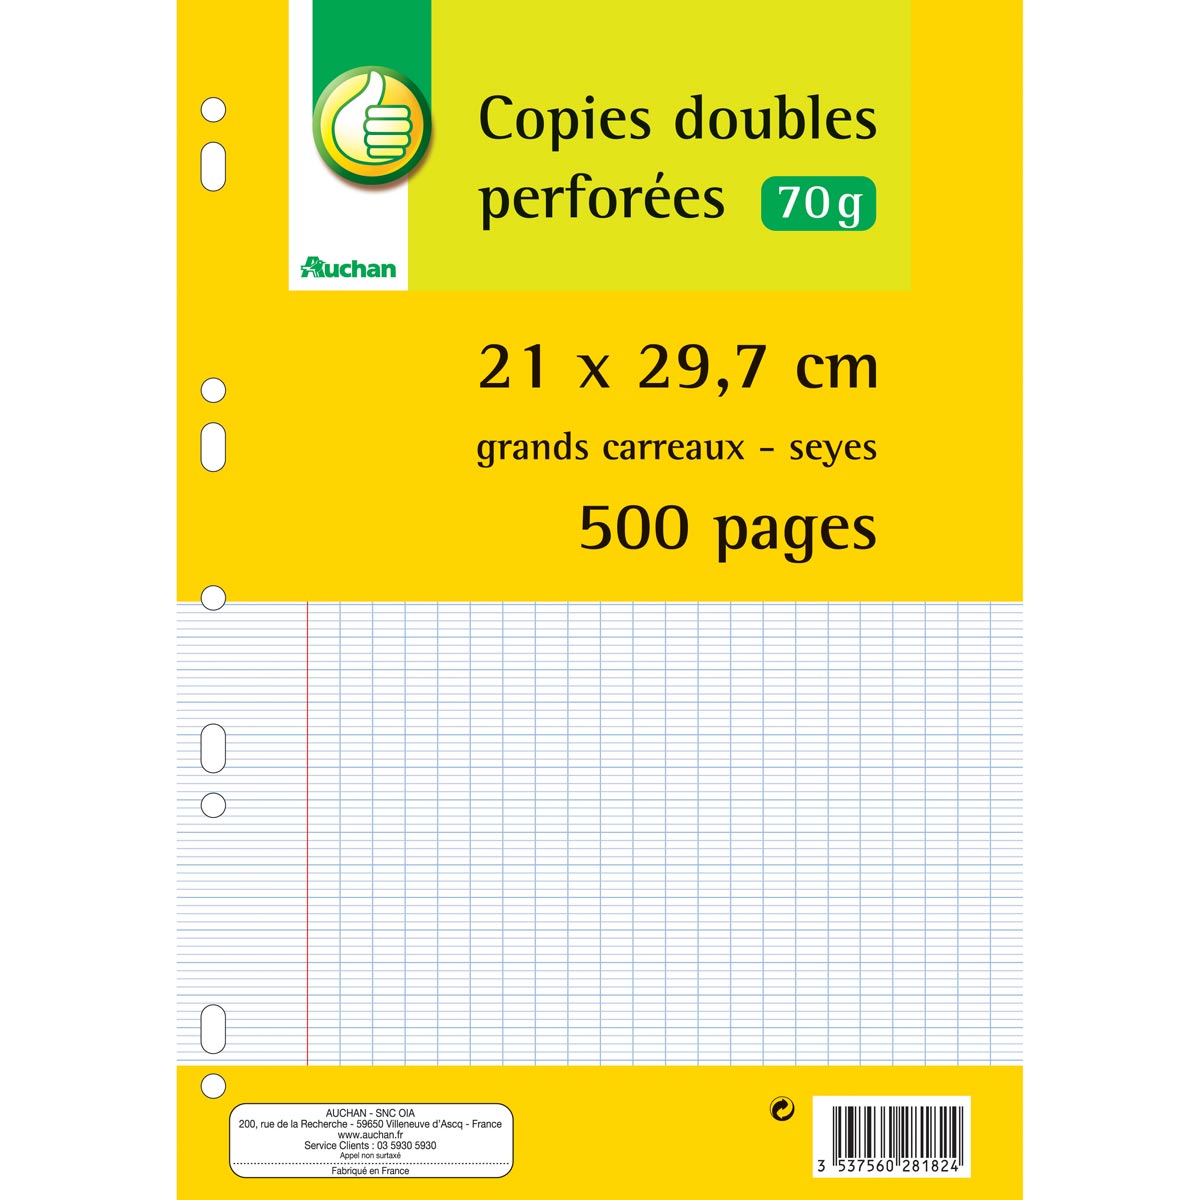 Copies doubles 200 pages perforées A4 - grands carreaux - 70g